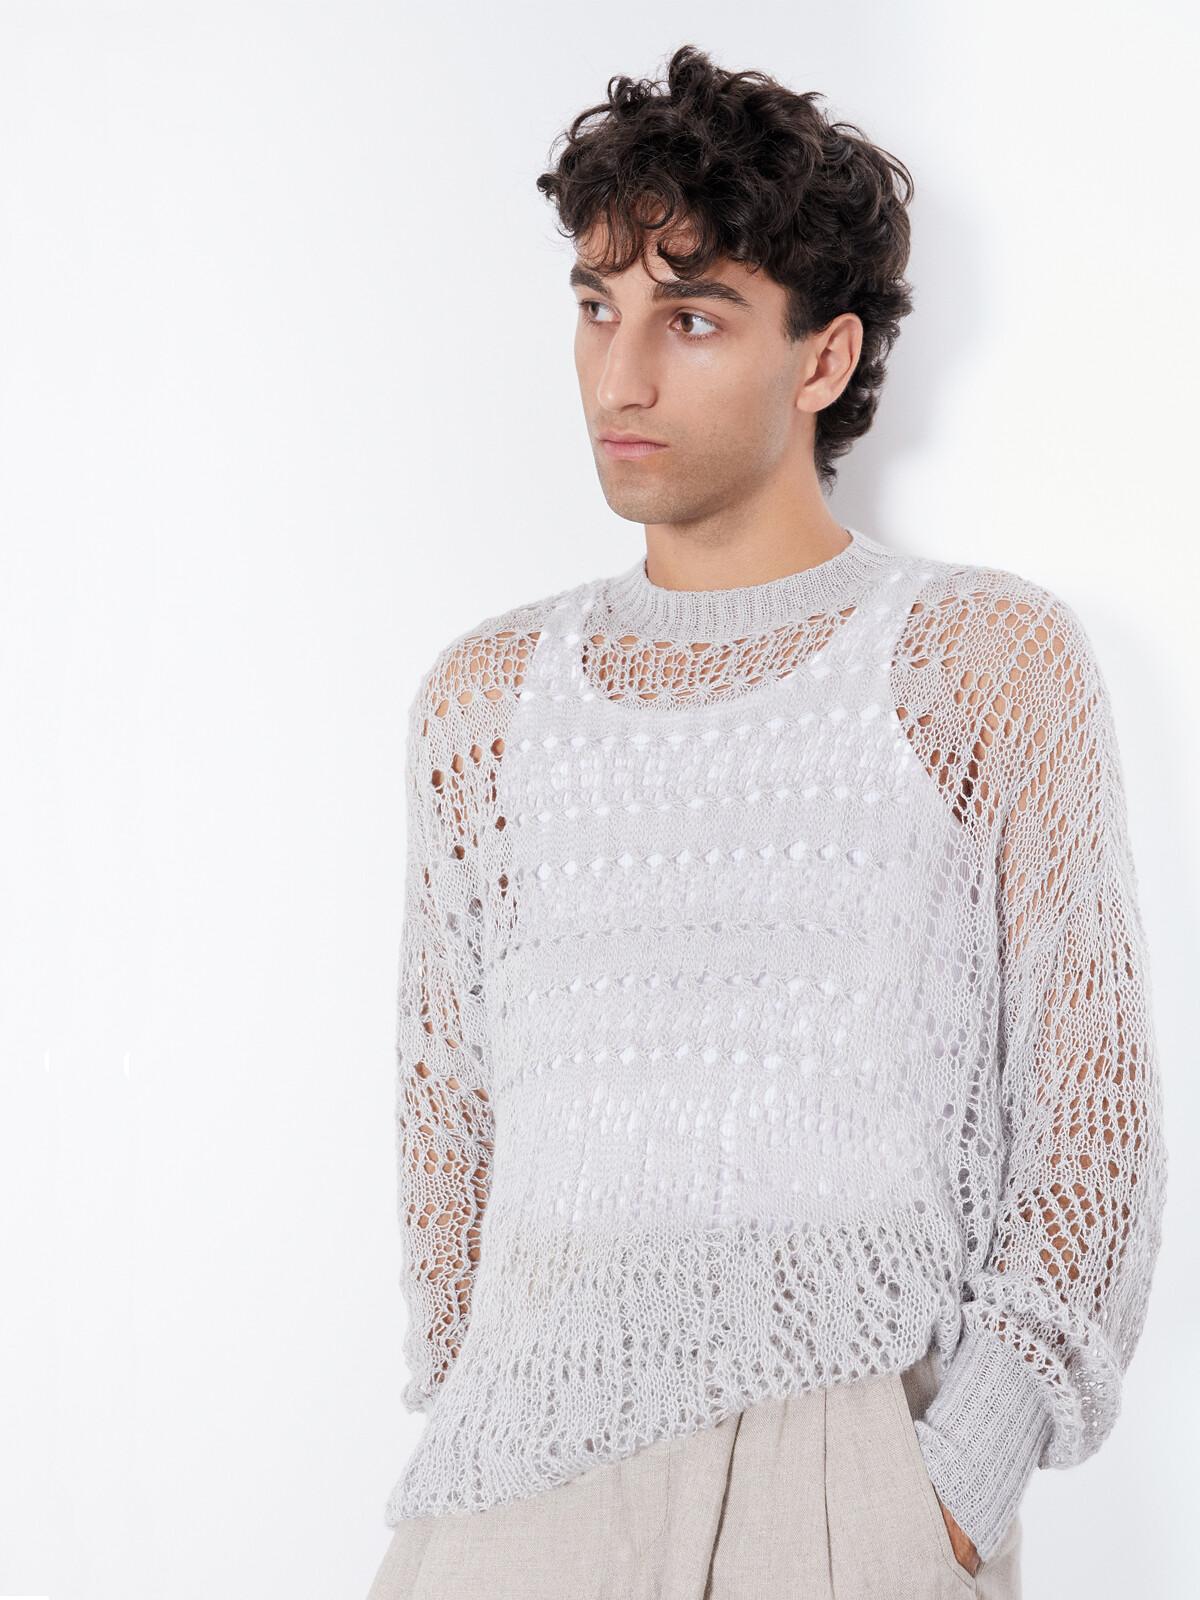 Mosaic lace sweater Image